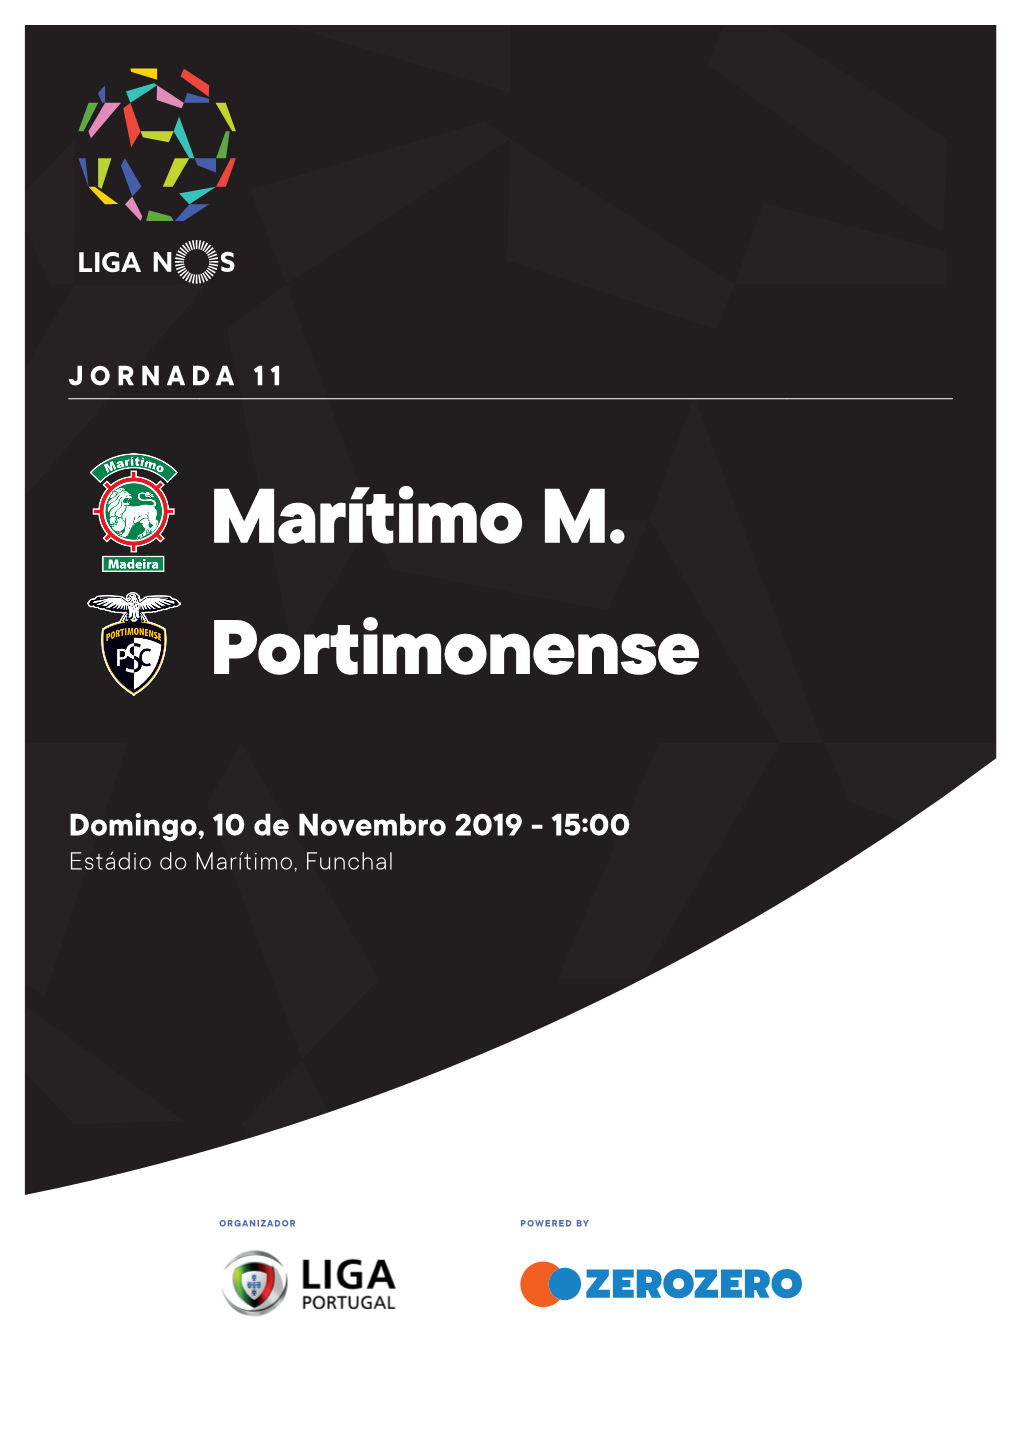 Marítimo M. Portimonense